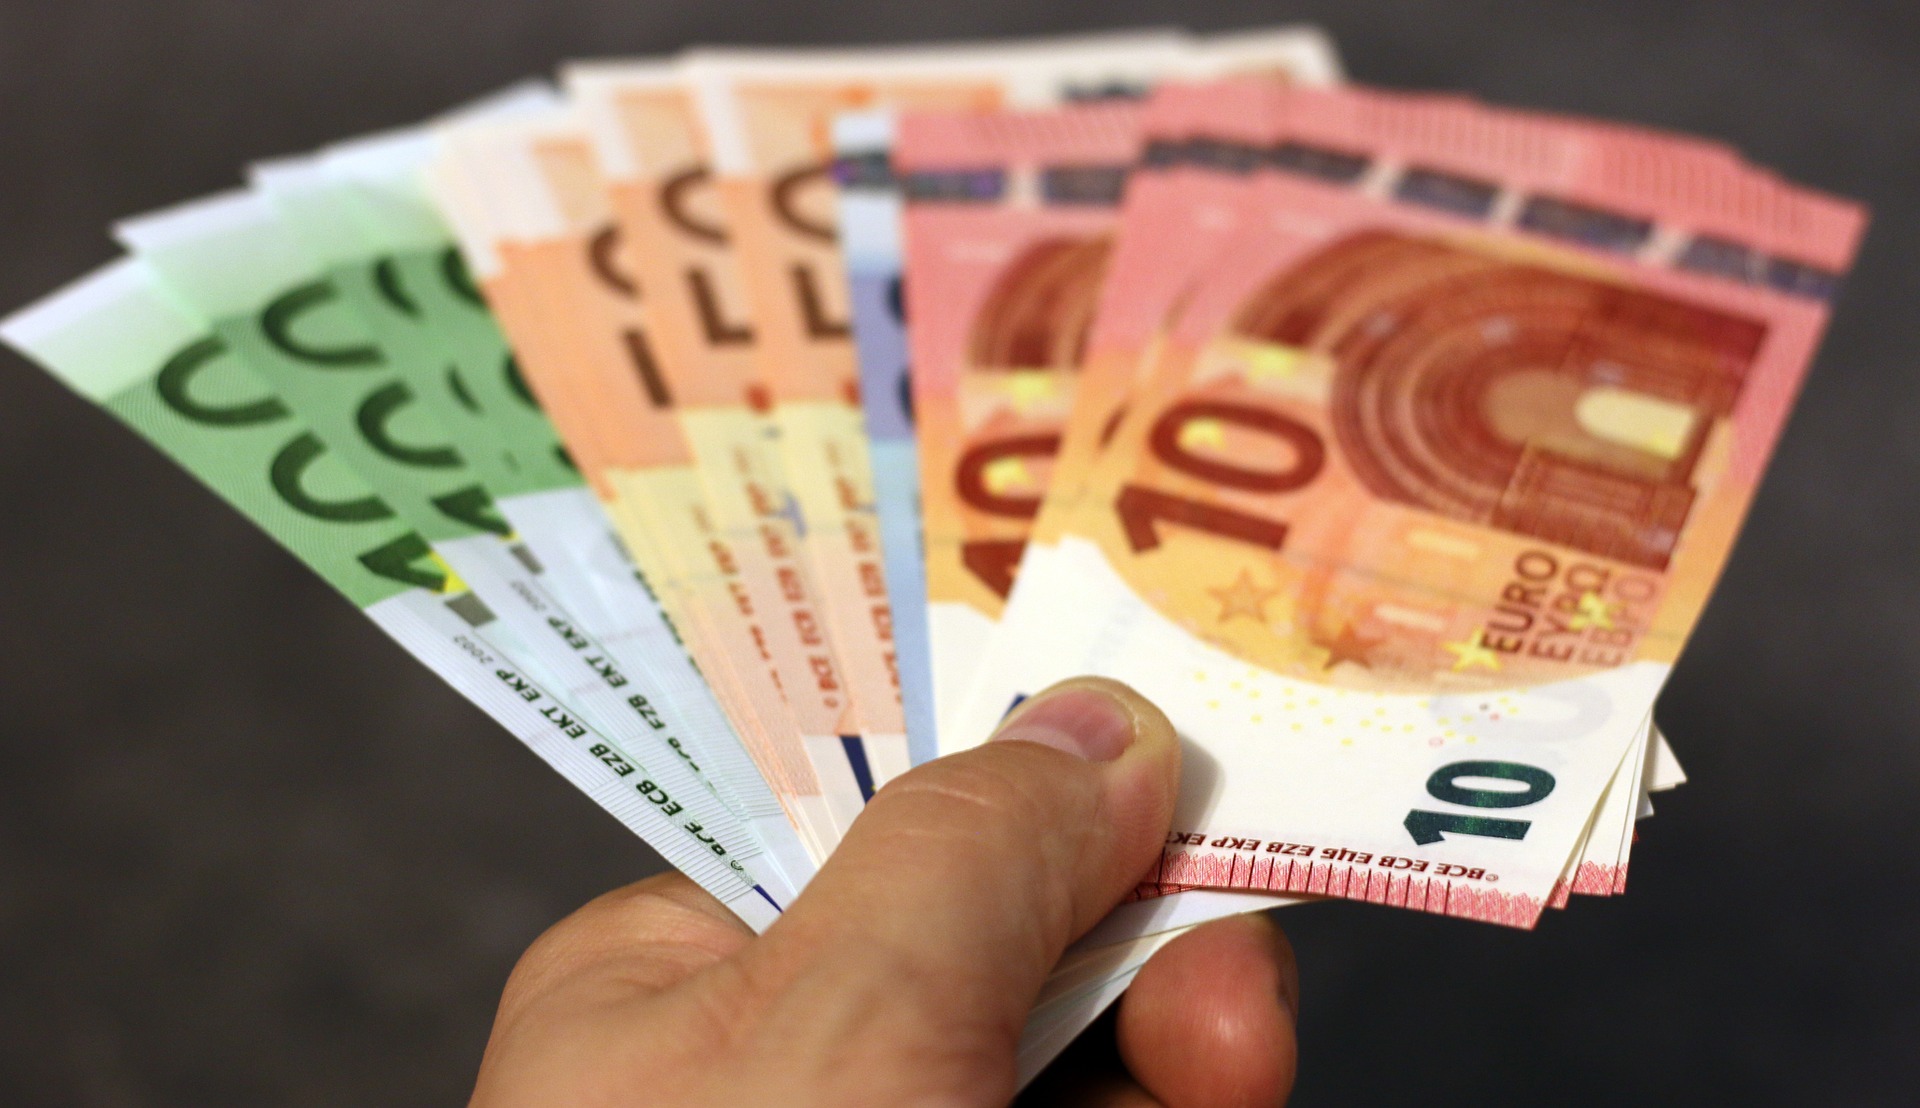 Ιδιωτικό νόμισμα ΕΥΡΩ, το ισχυρό εργαλείο σκλαβοποίησης των λαών της Ευρώπης-Μέρος 1ο euro